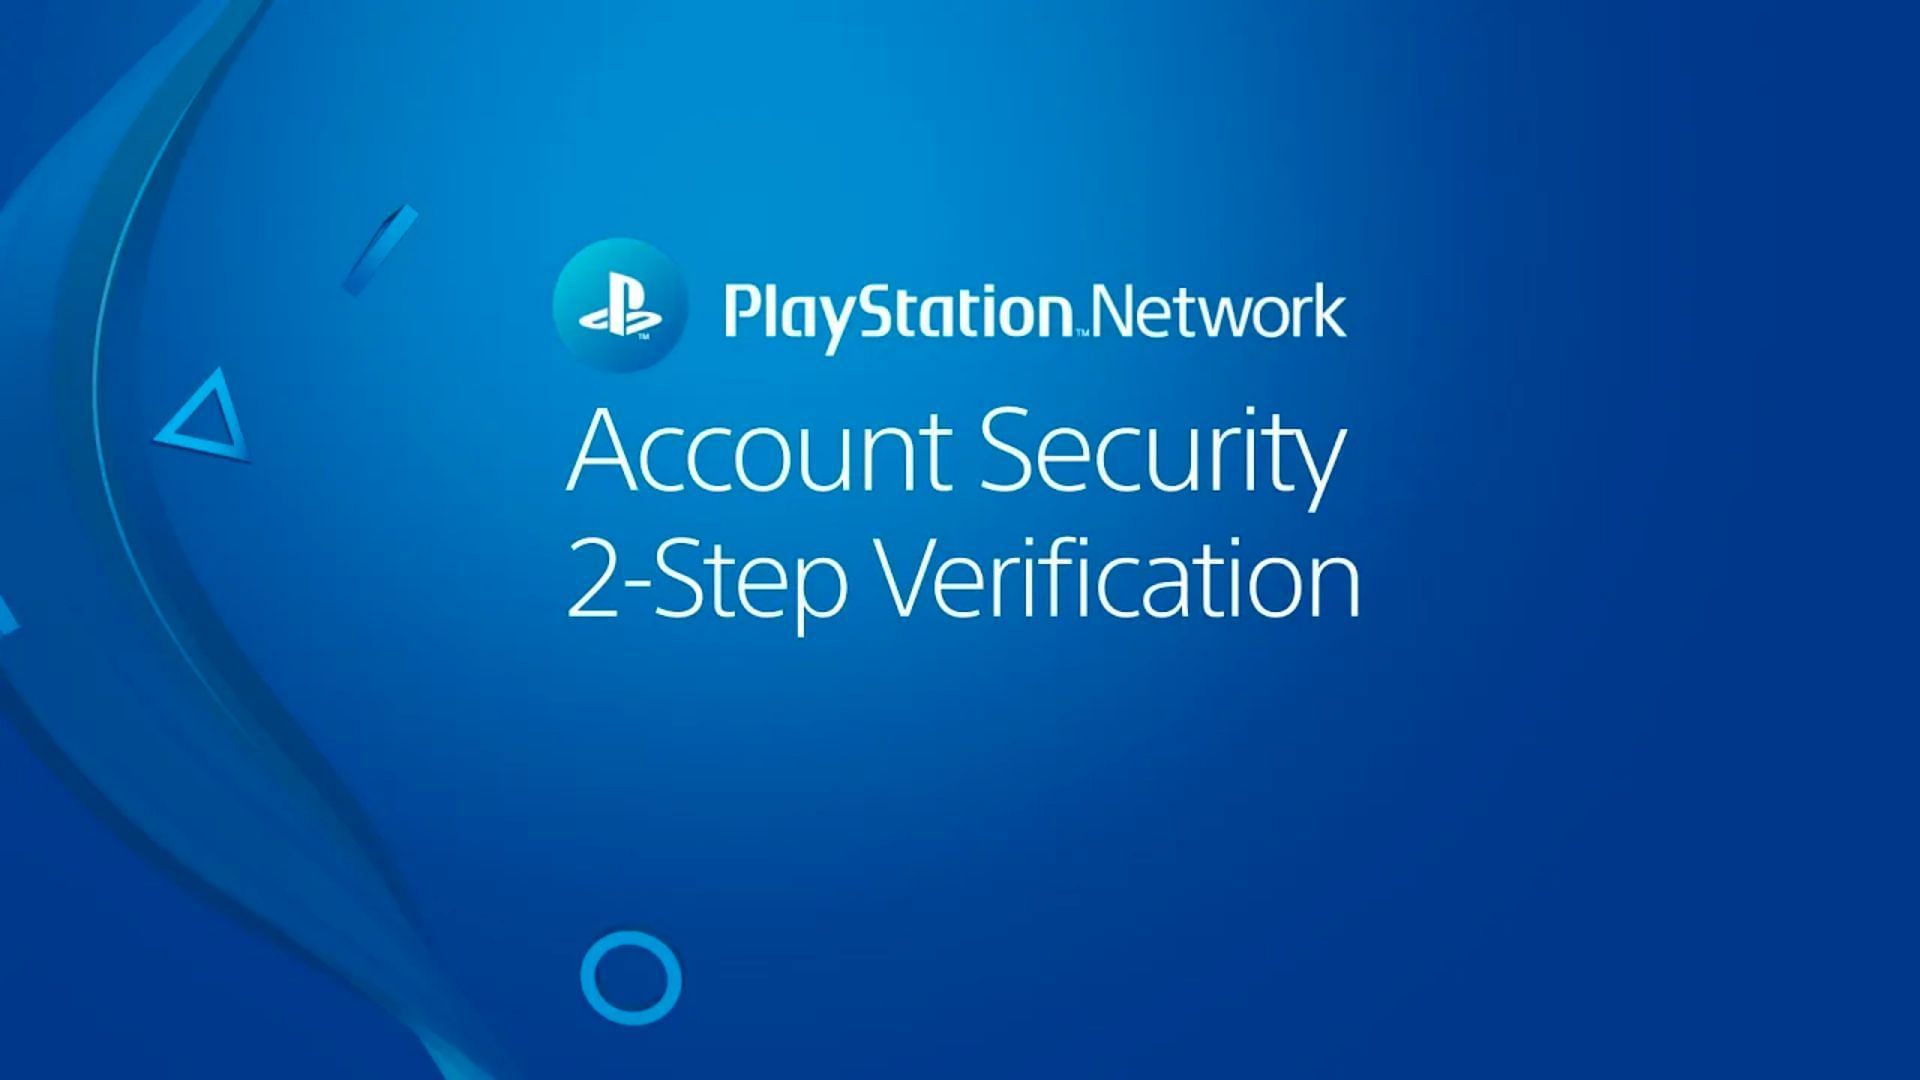 PlayStation Network は最近 2 段階認証を導入しました。これにより、サポートされていない国のプレイヤーにとっては困難になります (画像は PlayStation 経由)